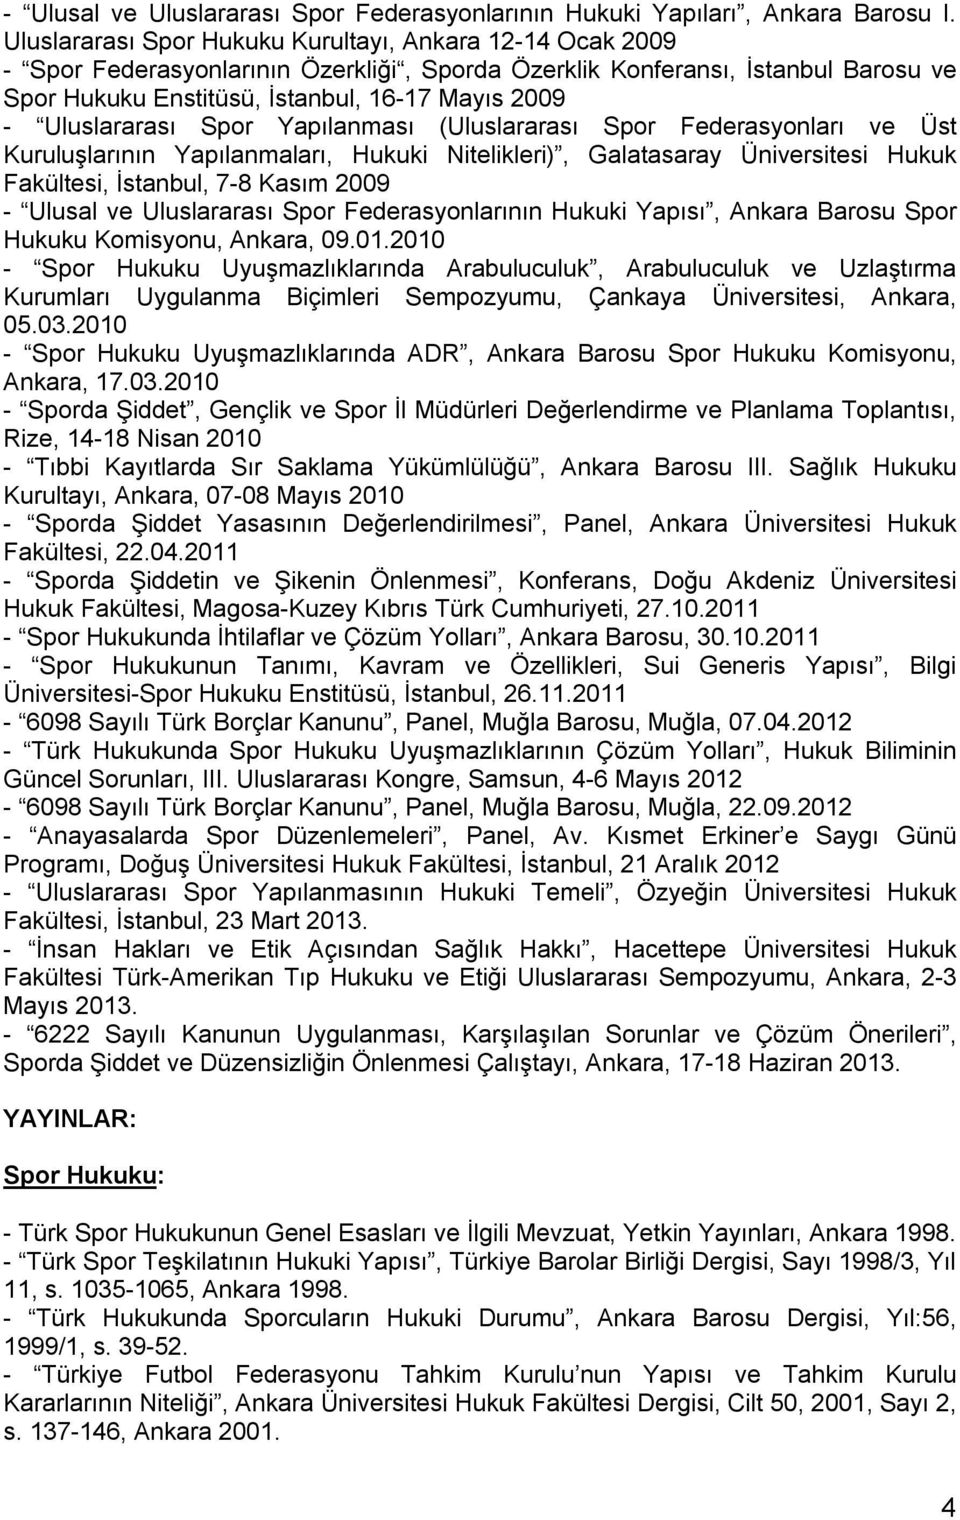 Uluslararası Spor Yapılanması (Uluslararası Spor Federasyonları ve Üst Kuruluşlarının Yapılanmaları, Hukuki Nitelikleri), Galatasaray Üniversitesi Hukuk Fakültesi, İstanbul, 7-8 Kasım 2009 - Ulusal